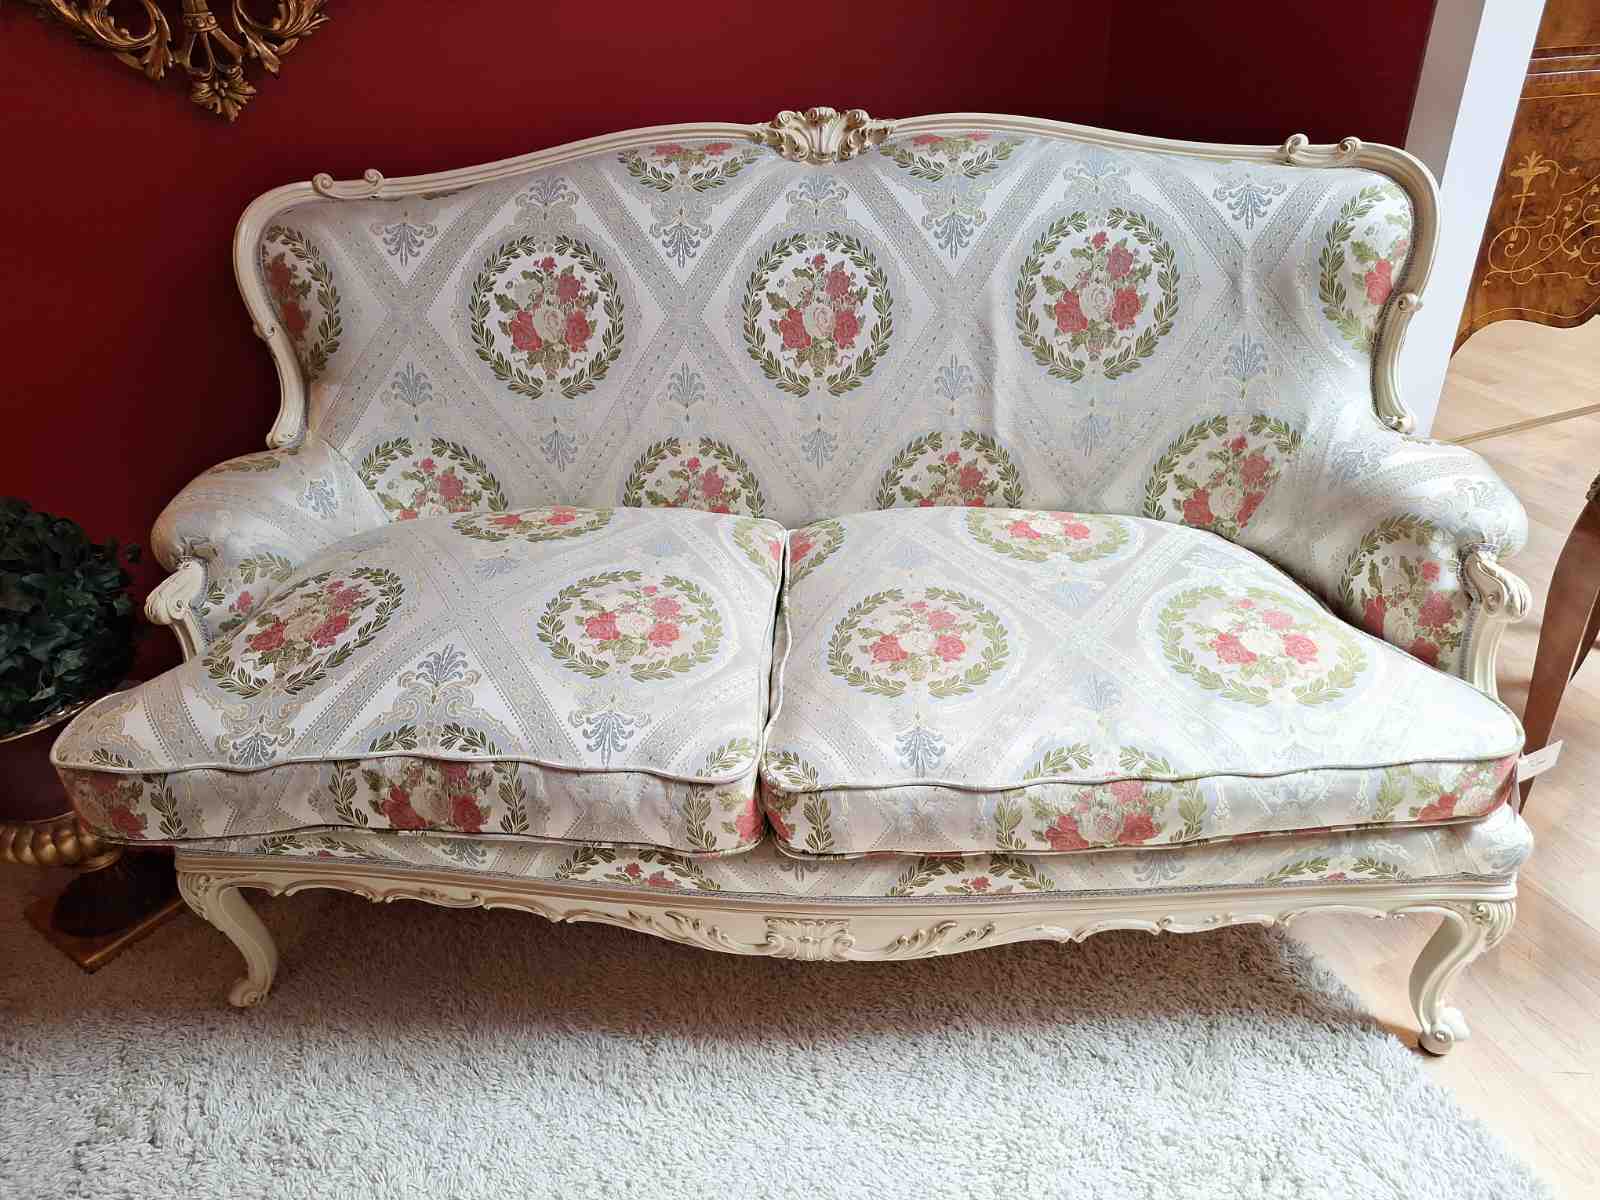 Cremefarbenes Sofa mit Ornamentstoff, mit Goldverzierungen, zierliche Größe, Secondhand, Frontalansicht.